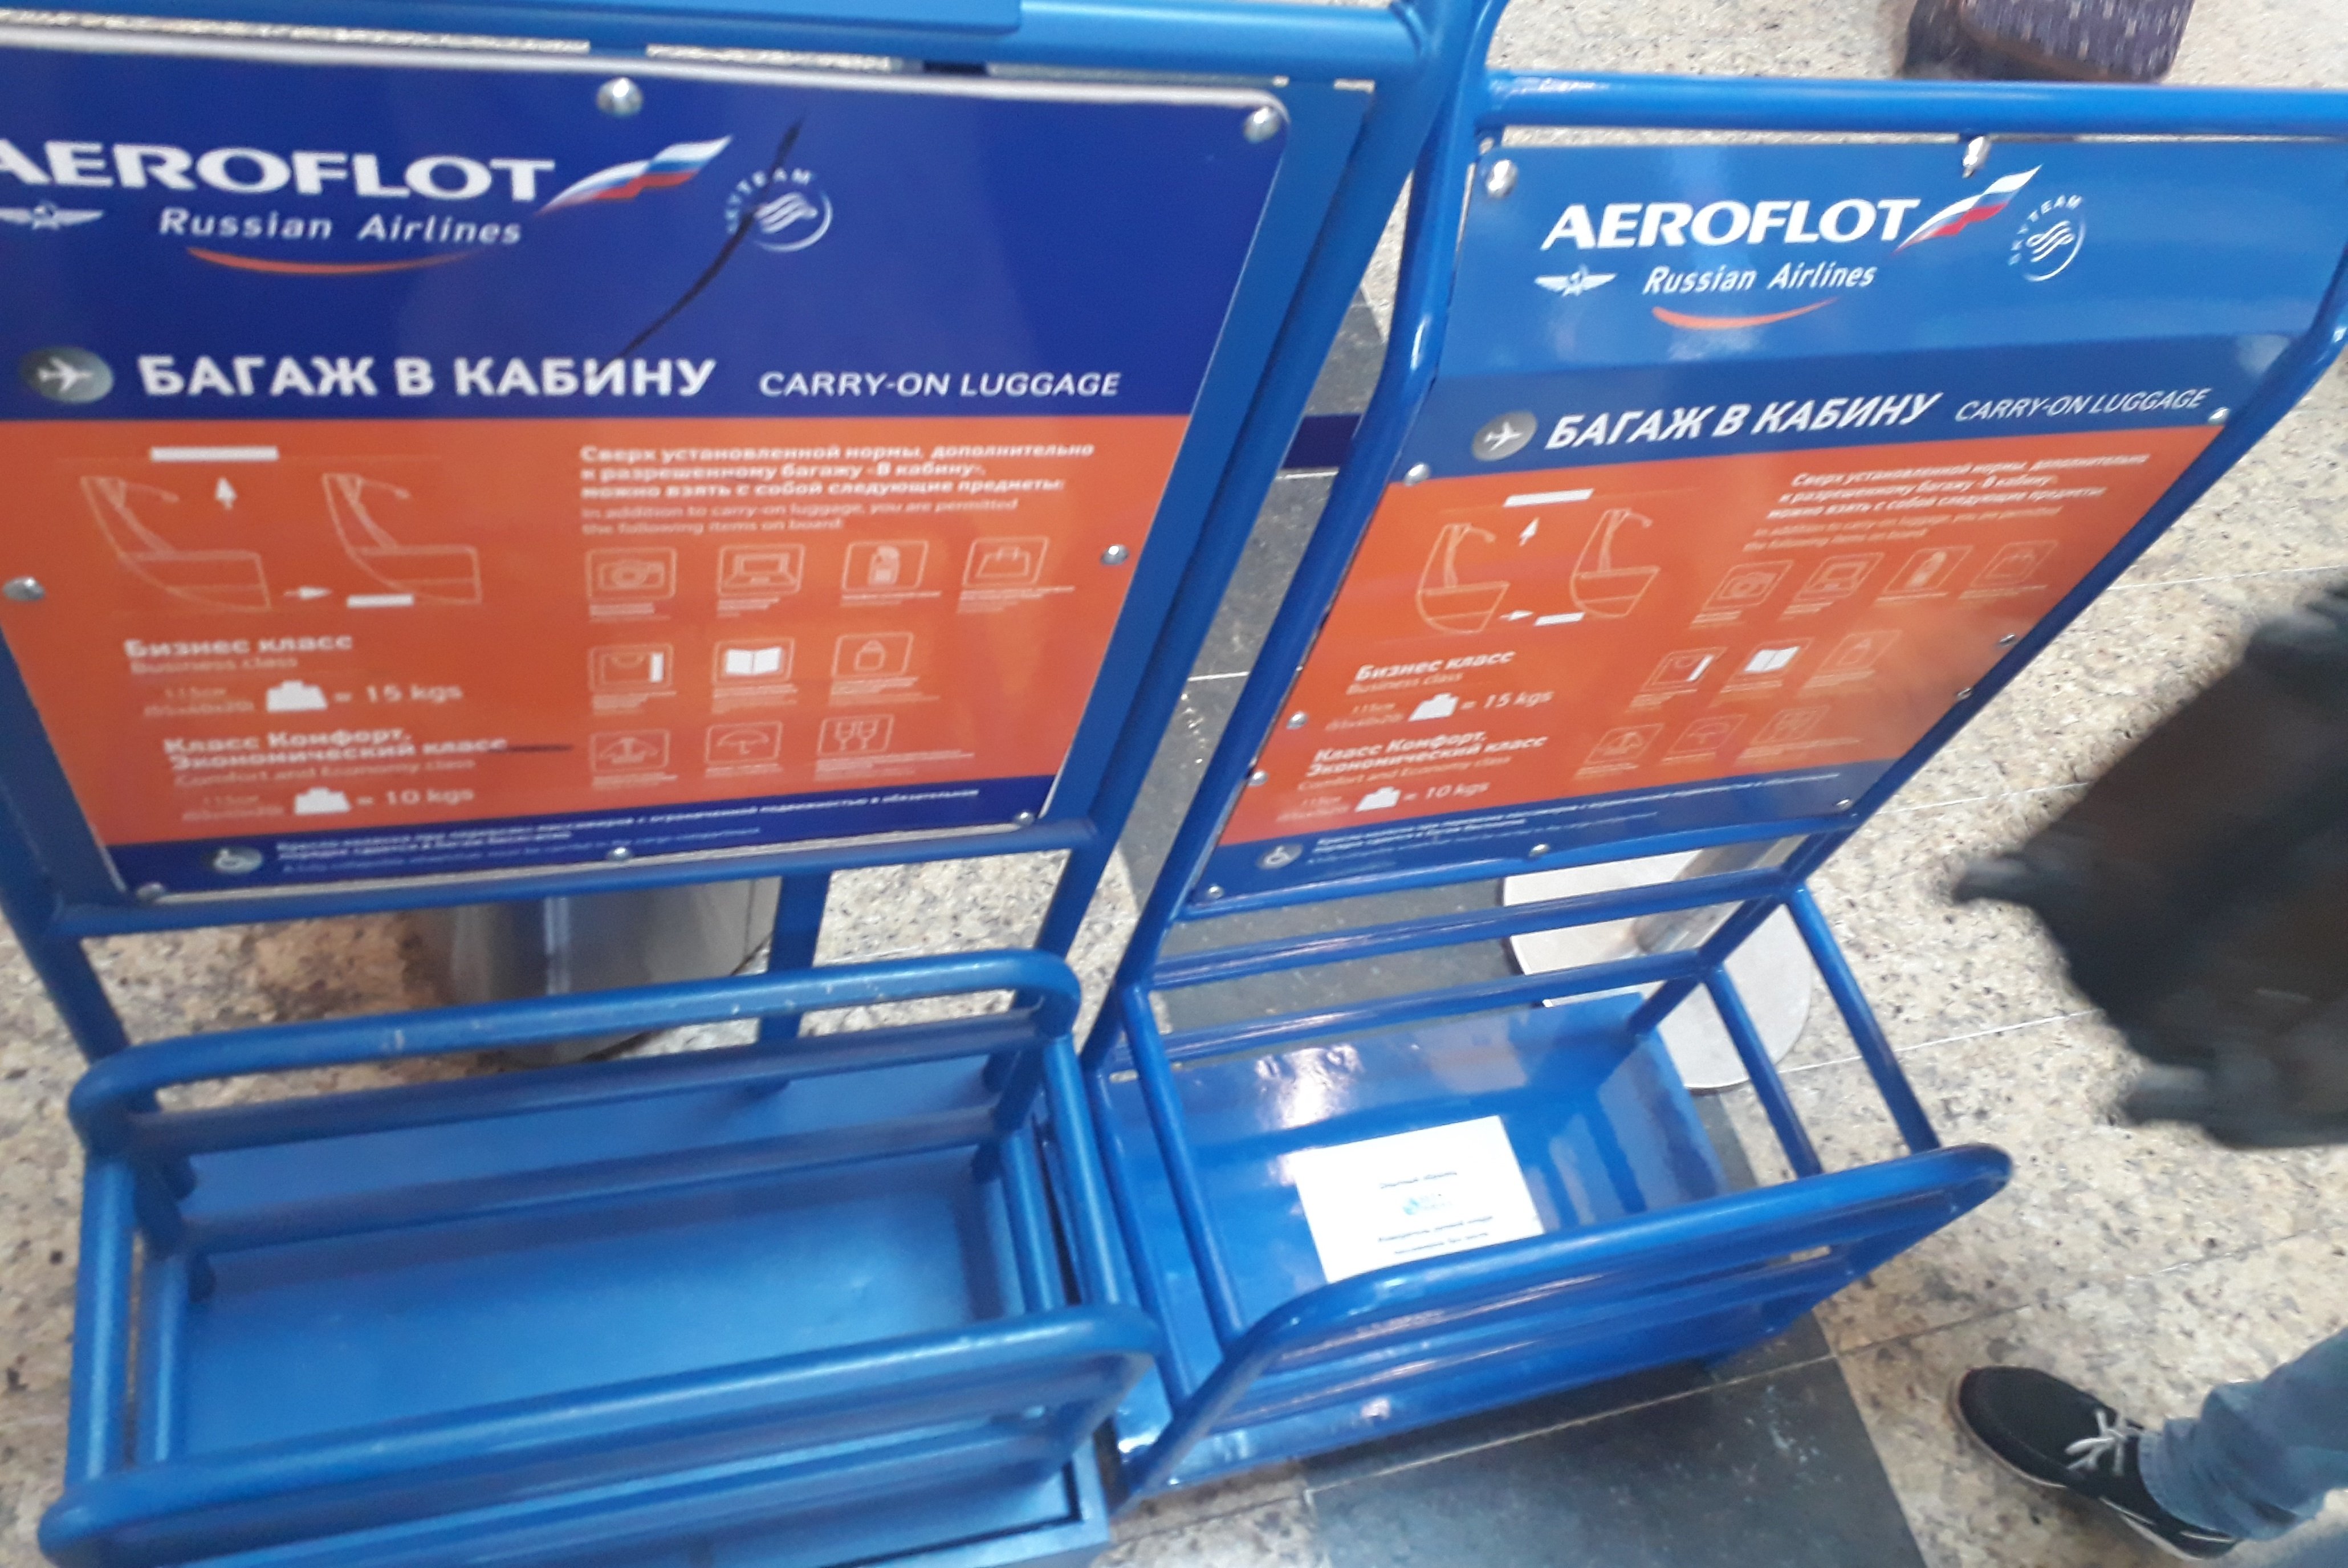 Аэрофлот" испытывает новые калибраторы ручной клади / Россия : Авиакомпании  / Travel.ru